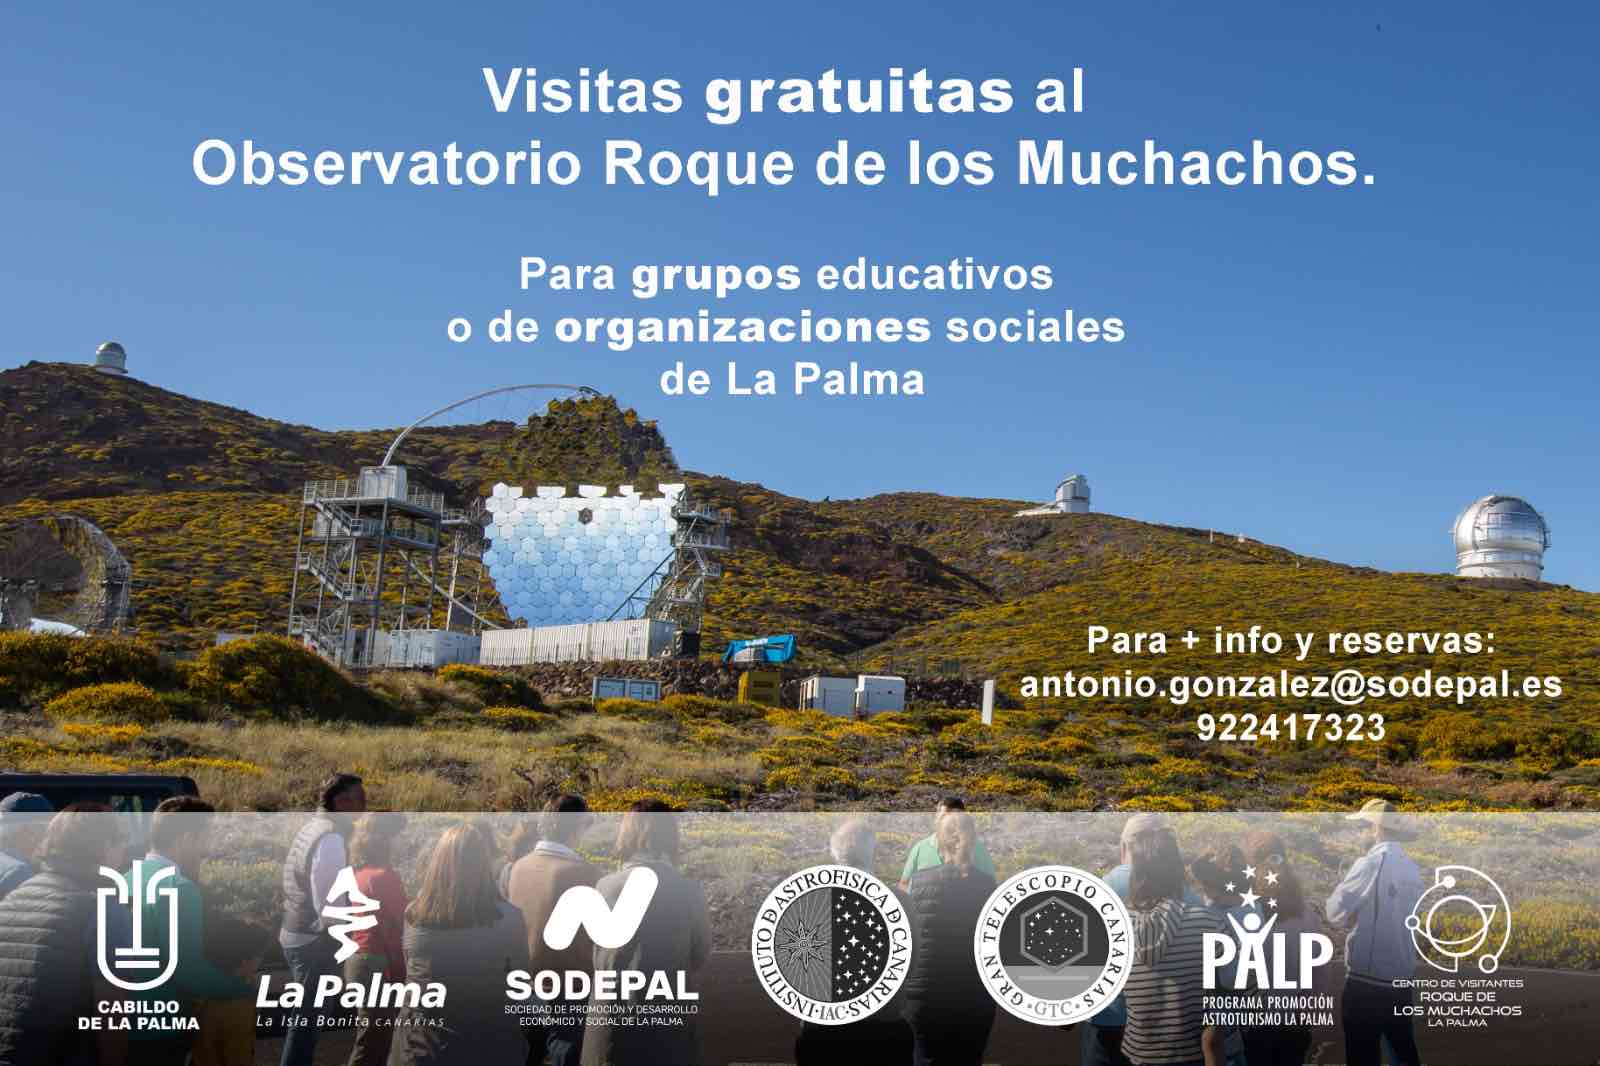 El Cabildo organiza visitas gratuitas al Observatorio del Roque de los Muchachos para grupos educativos o de organizaciones sociales